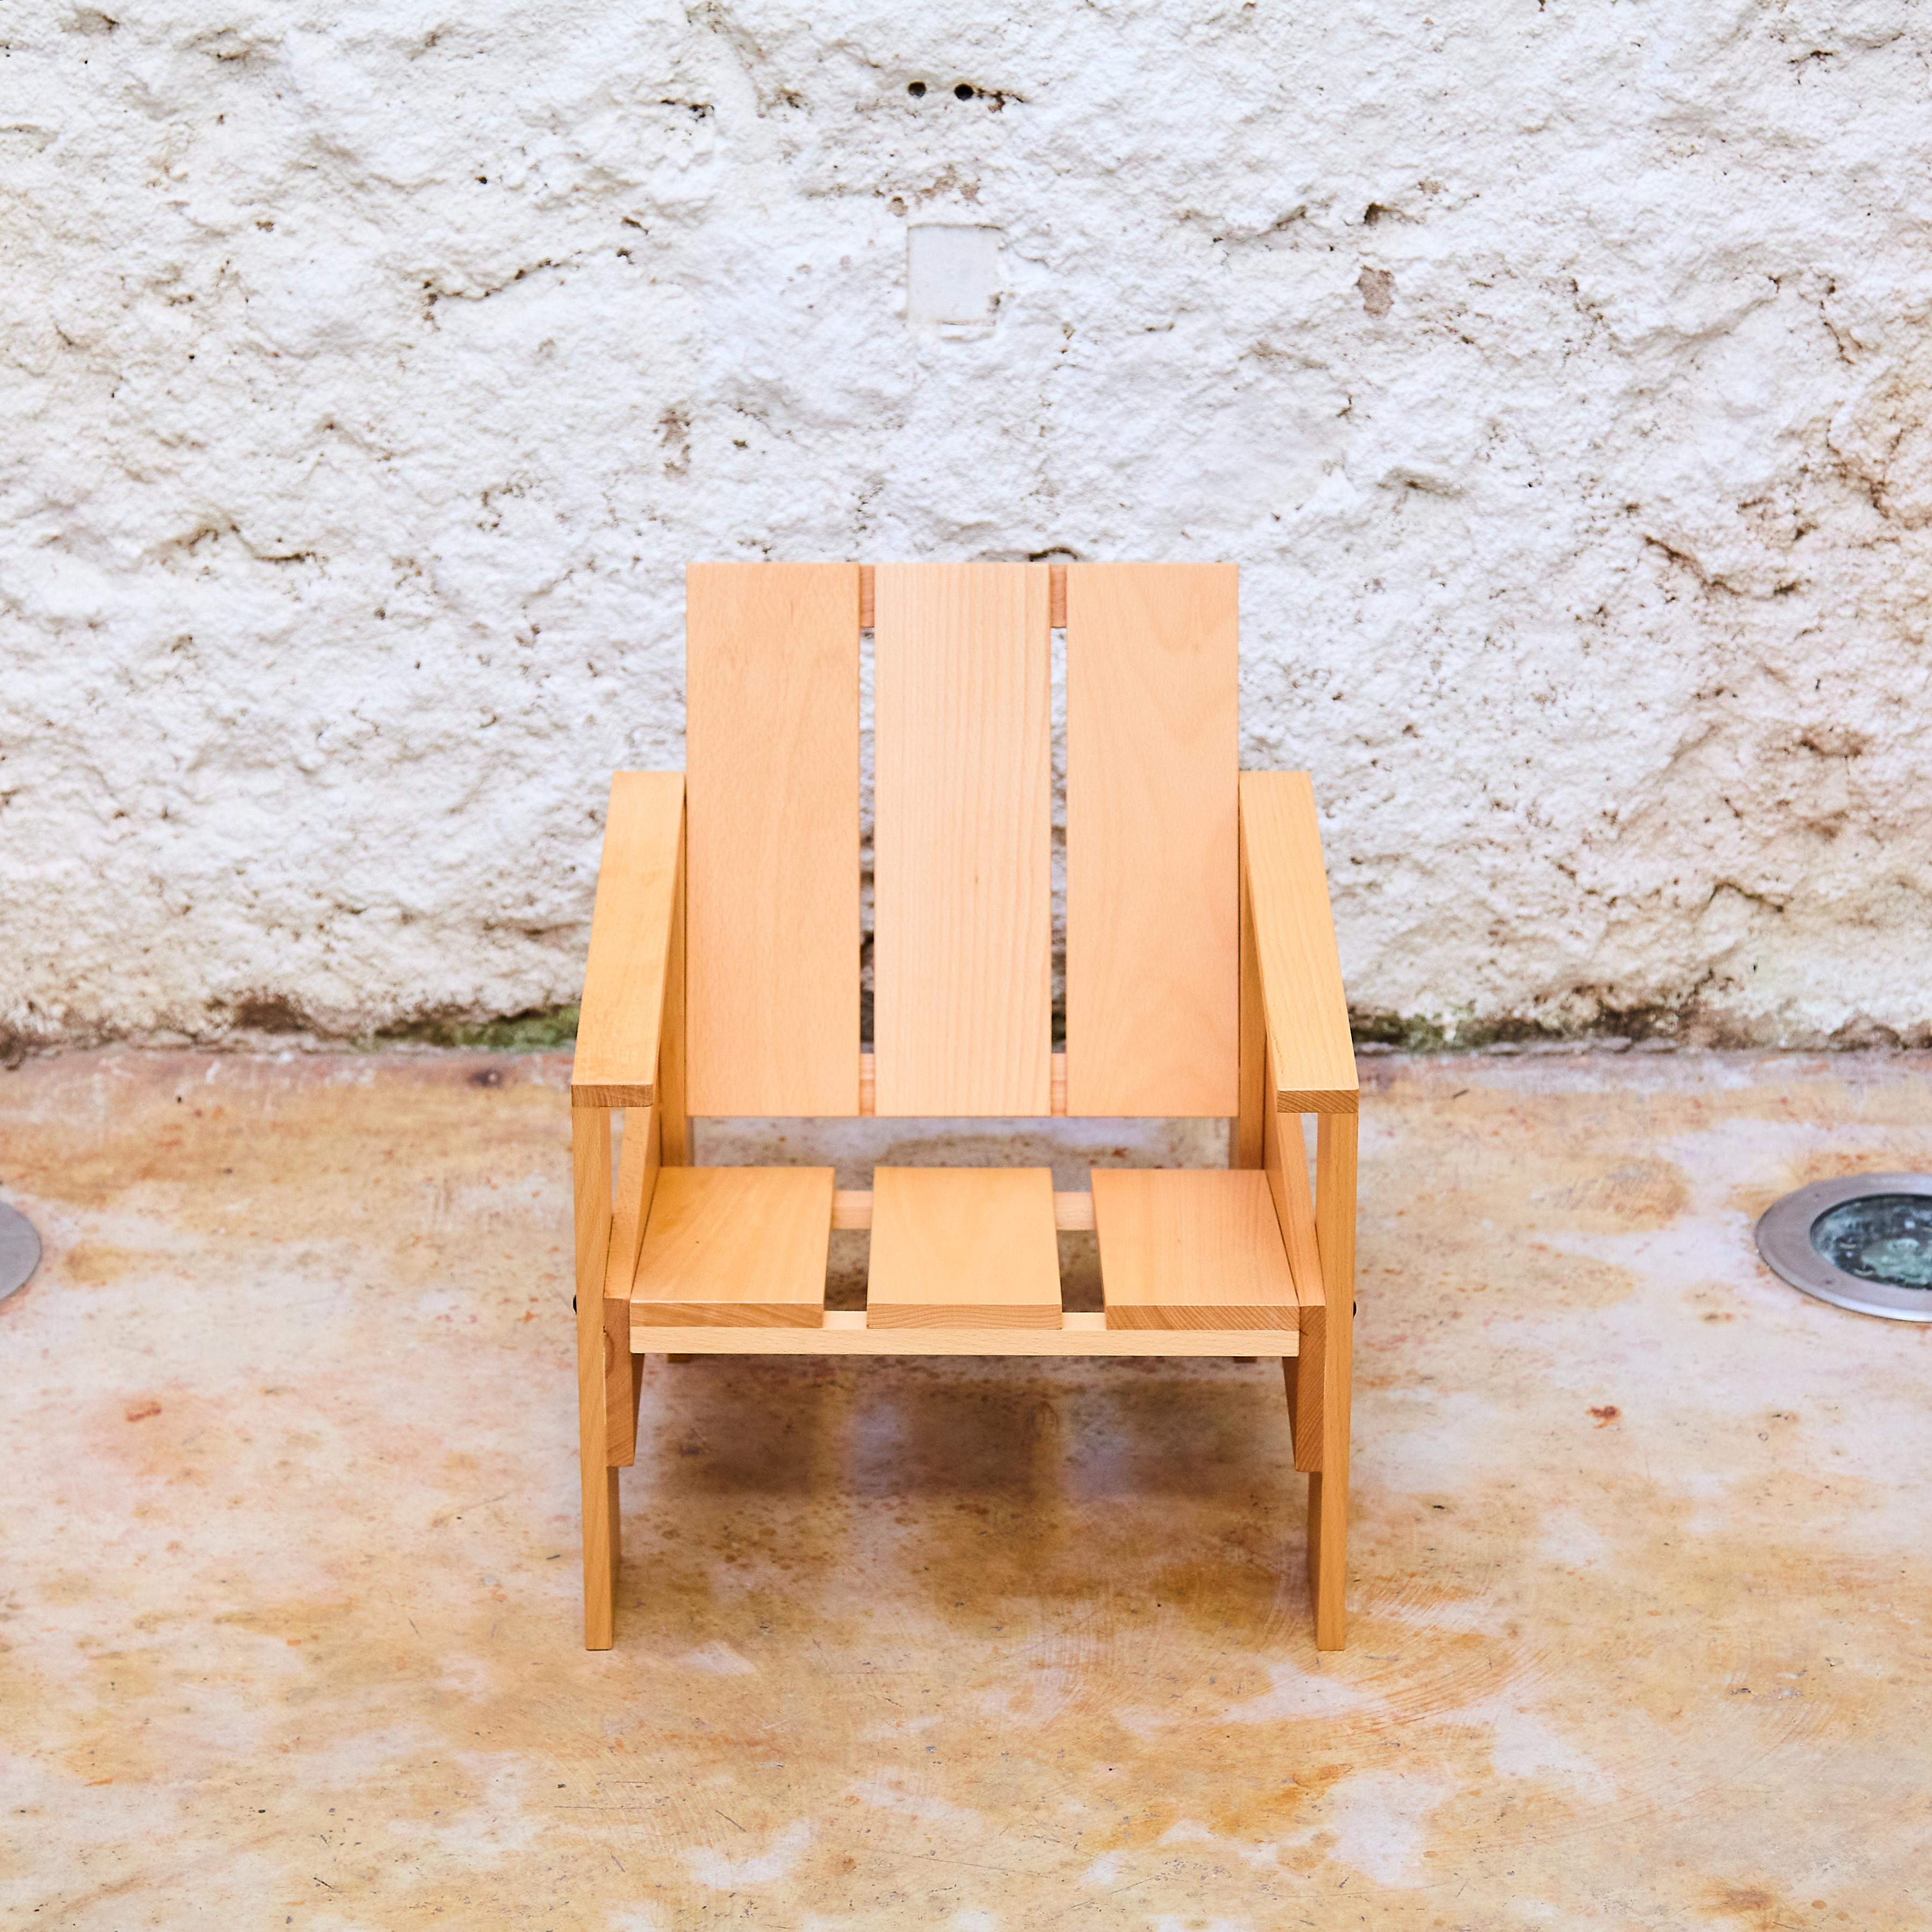 Chaise basse à tiroir en bois naturel laqué pour Enfants de Gerrit Rietveld. Produit par la famille Rietveld avec numéro individuel et puce. Un design magnifique et amusant. Cette chaise porte le numéro de série : CCLS 00772.

Fabriqué aux